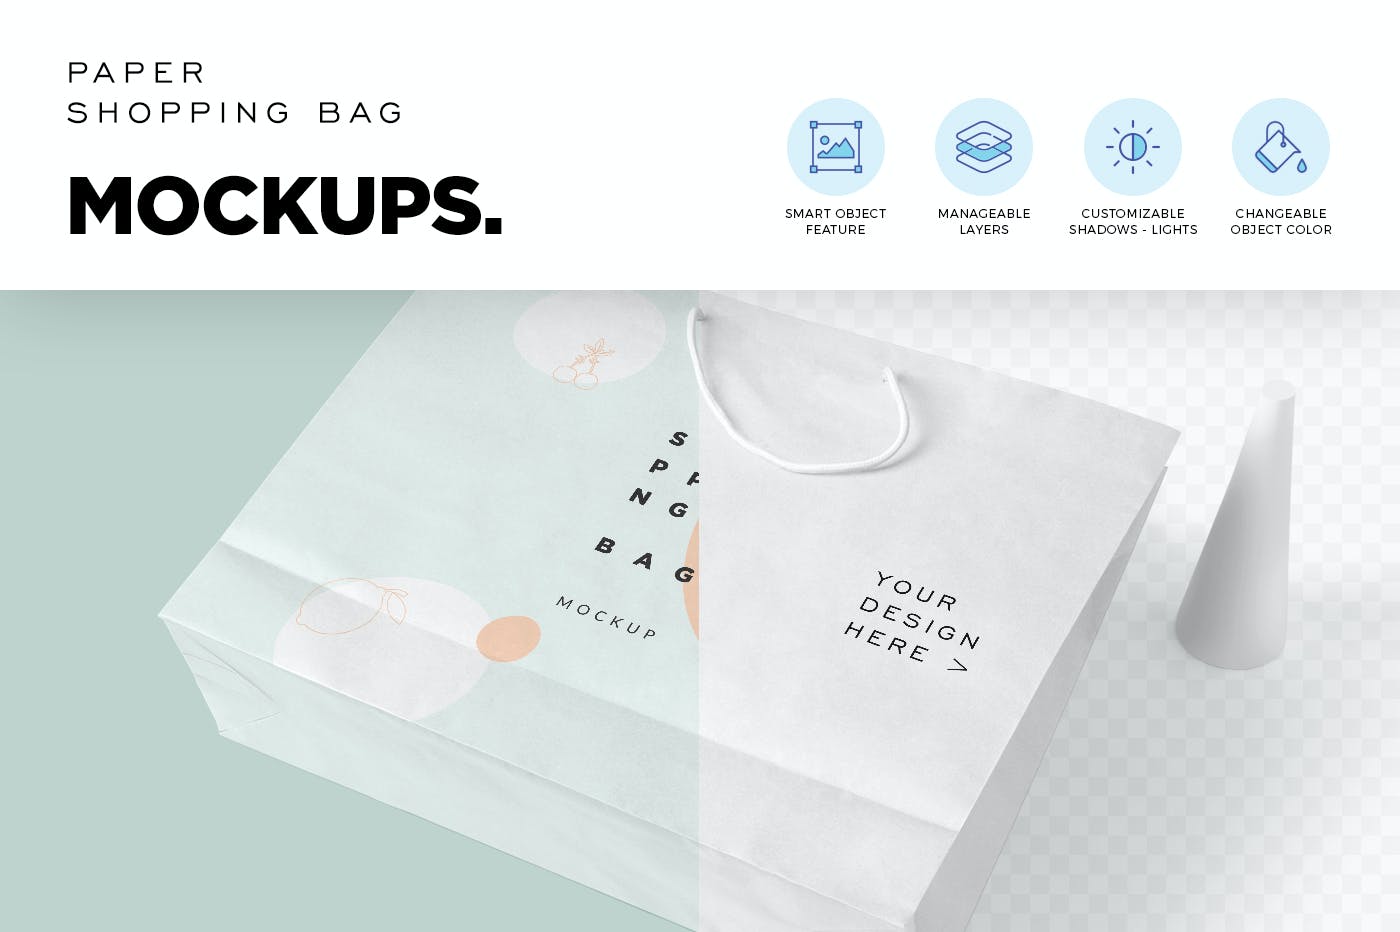 购物袋品牌包装设计样机模板 4 Paper Shopping Bag Mockups设计素材模板